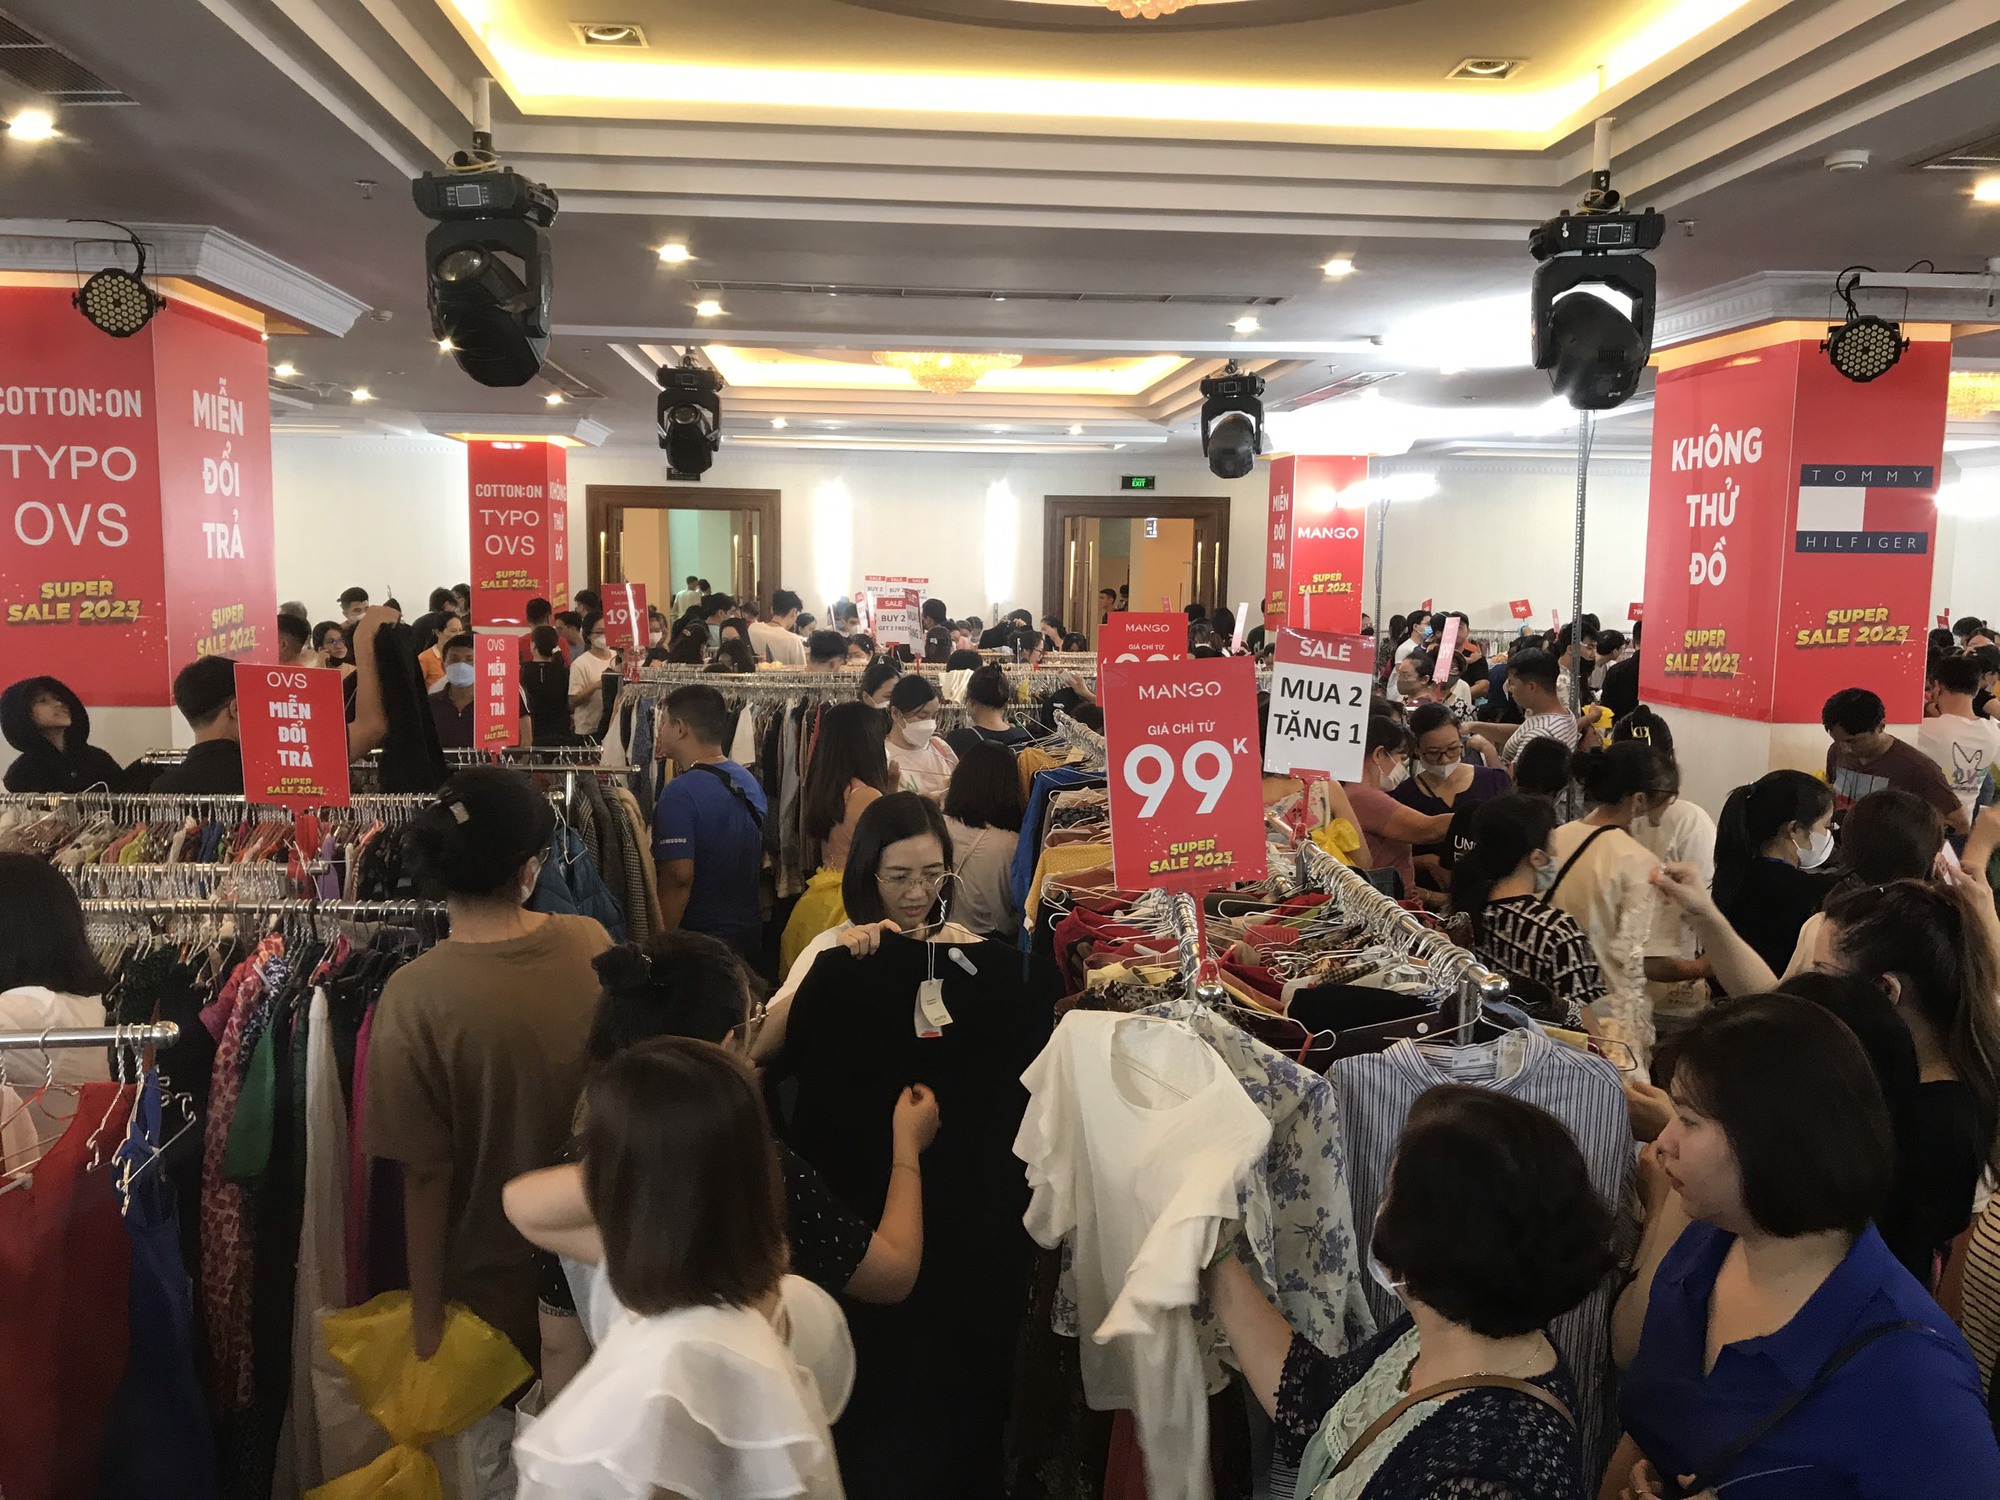 “Biển người” chen nhau mua hàng hiệu giảm giá tới 90% ở Sài Gòn - Ảnh 2.